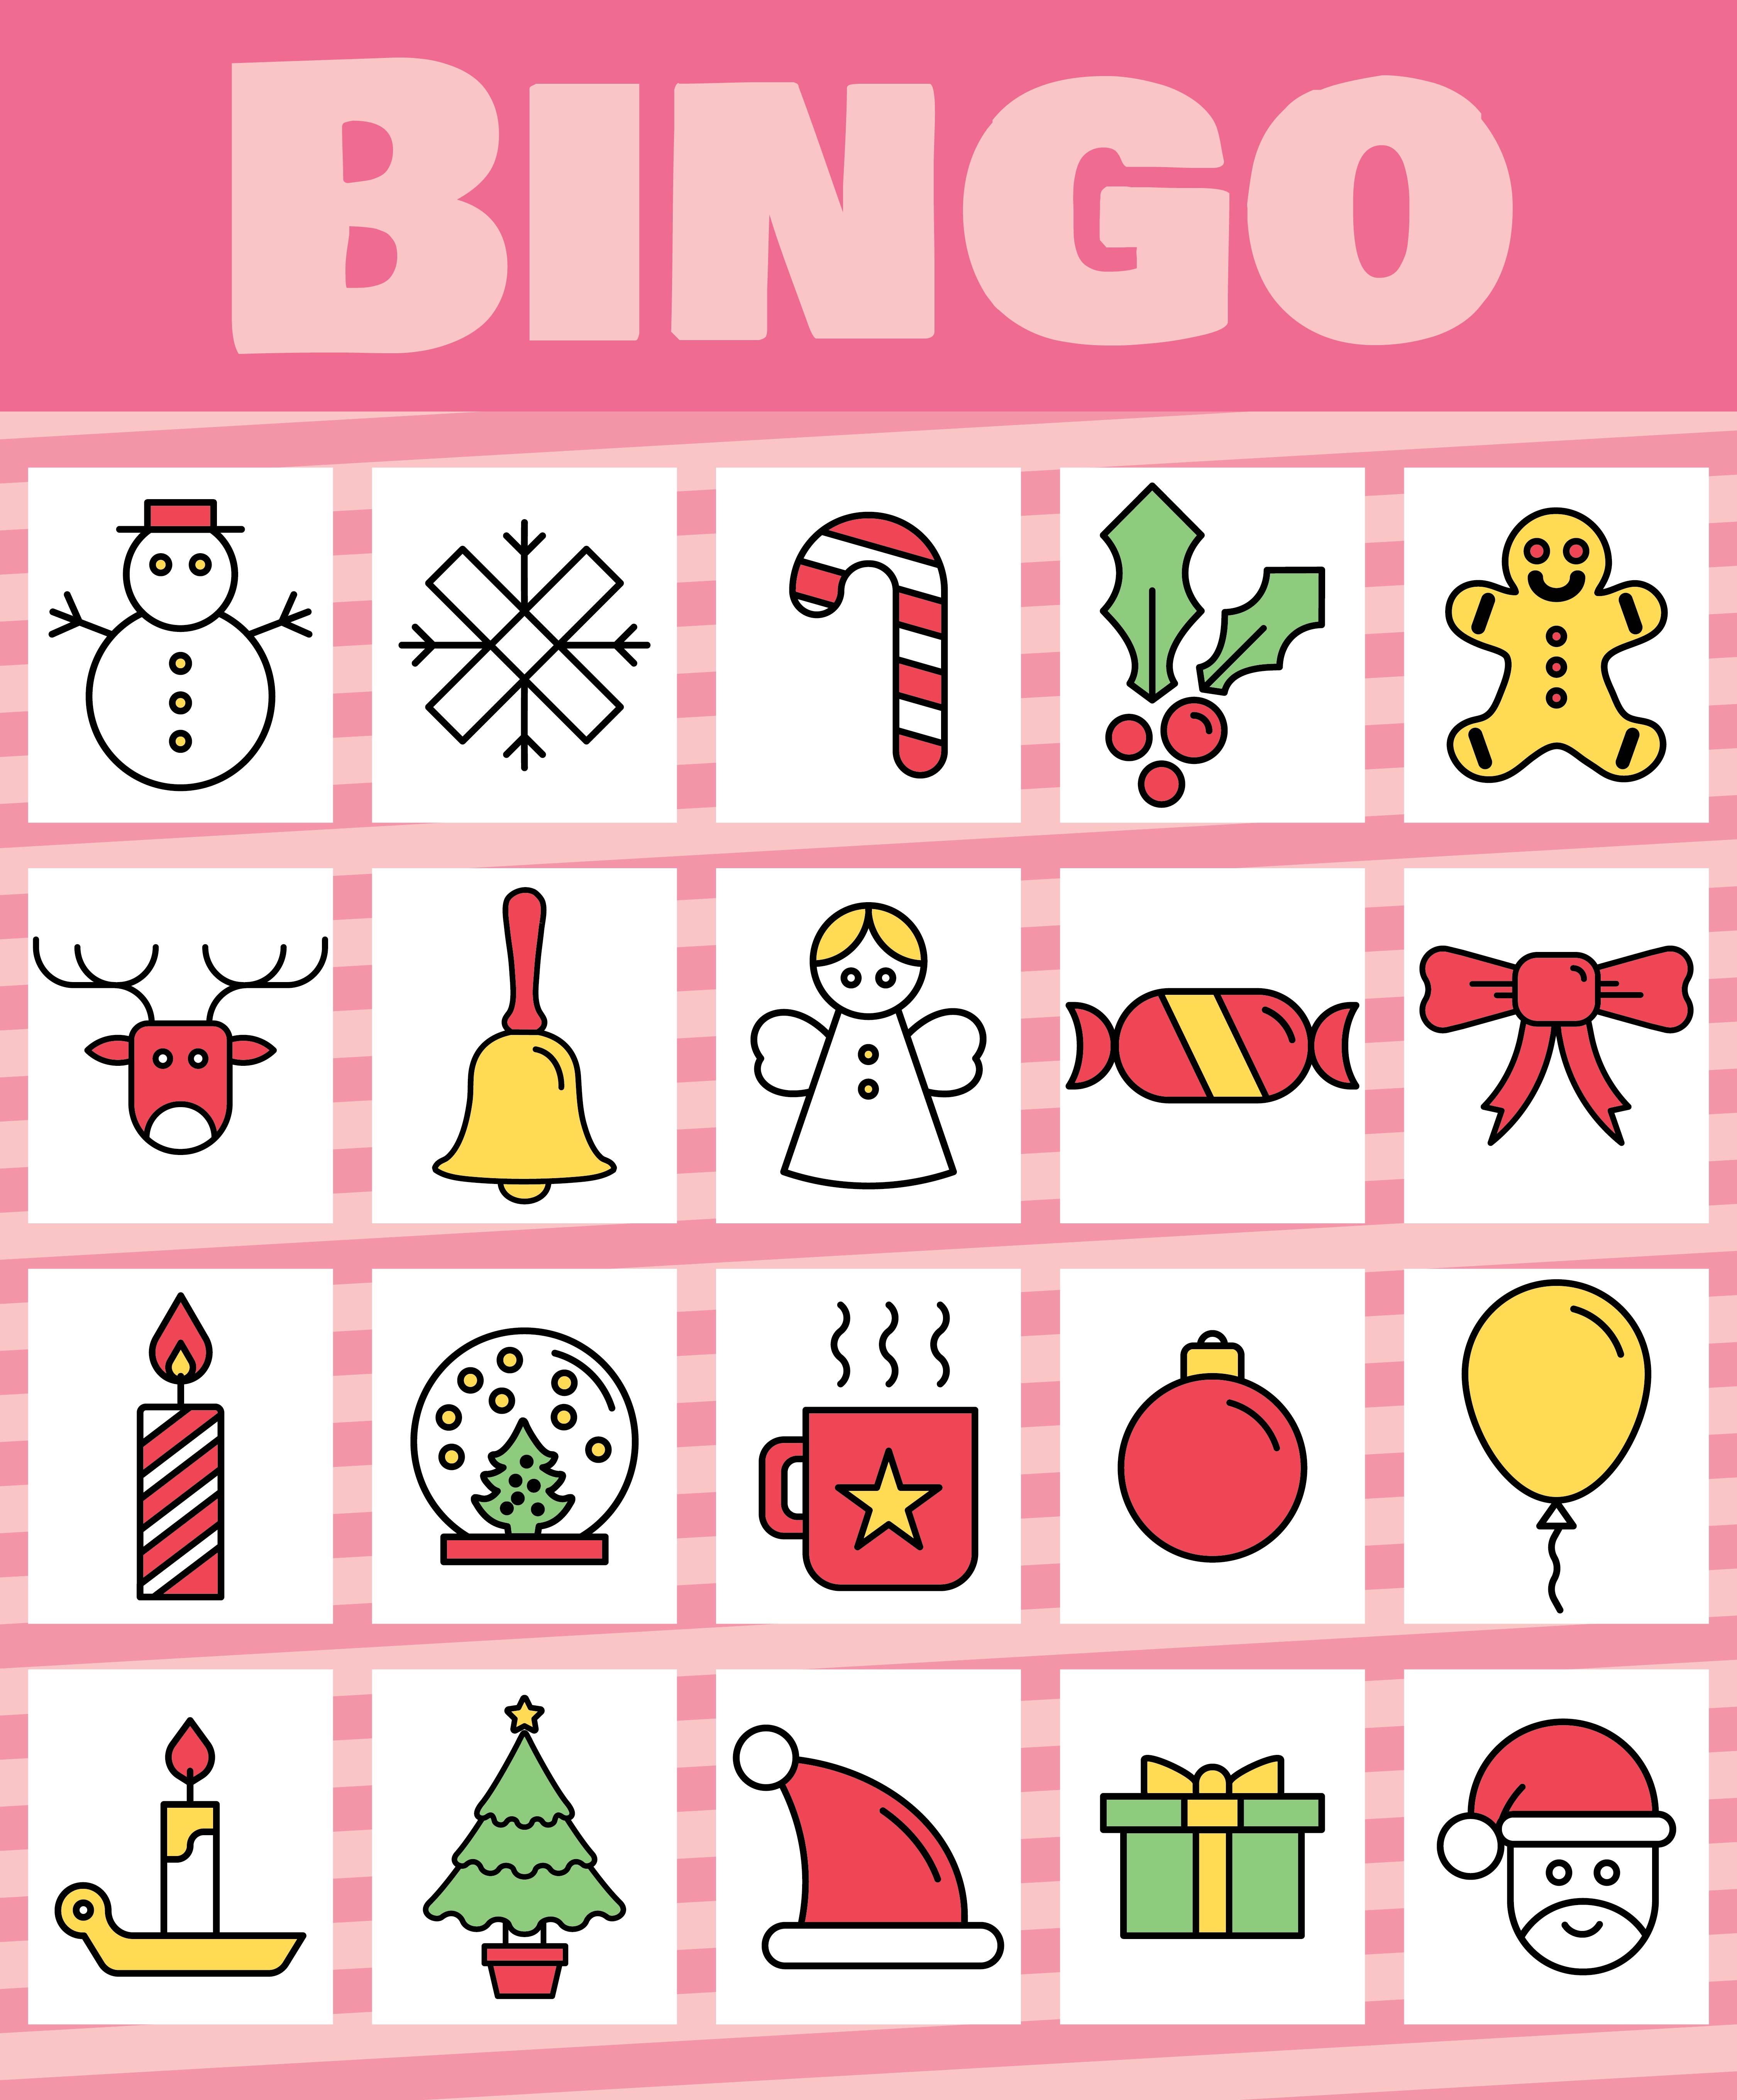 Free Christmas Bingo Printable